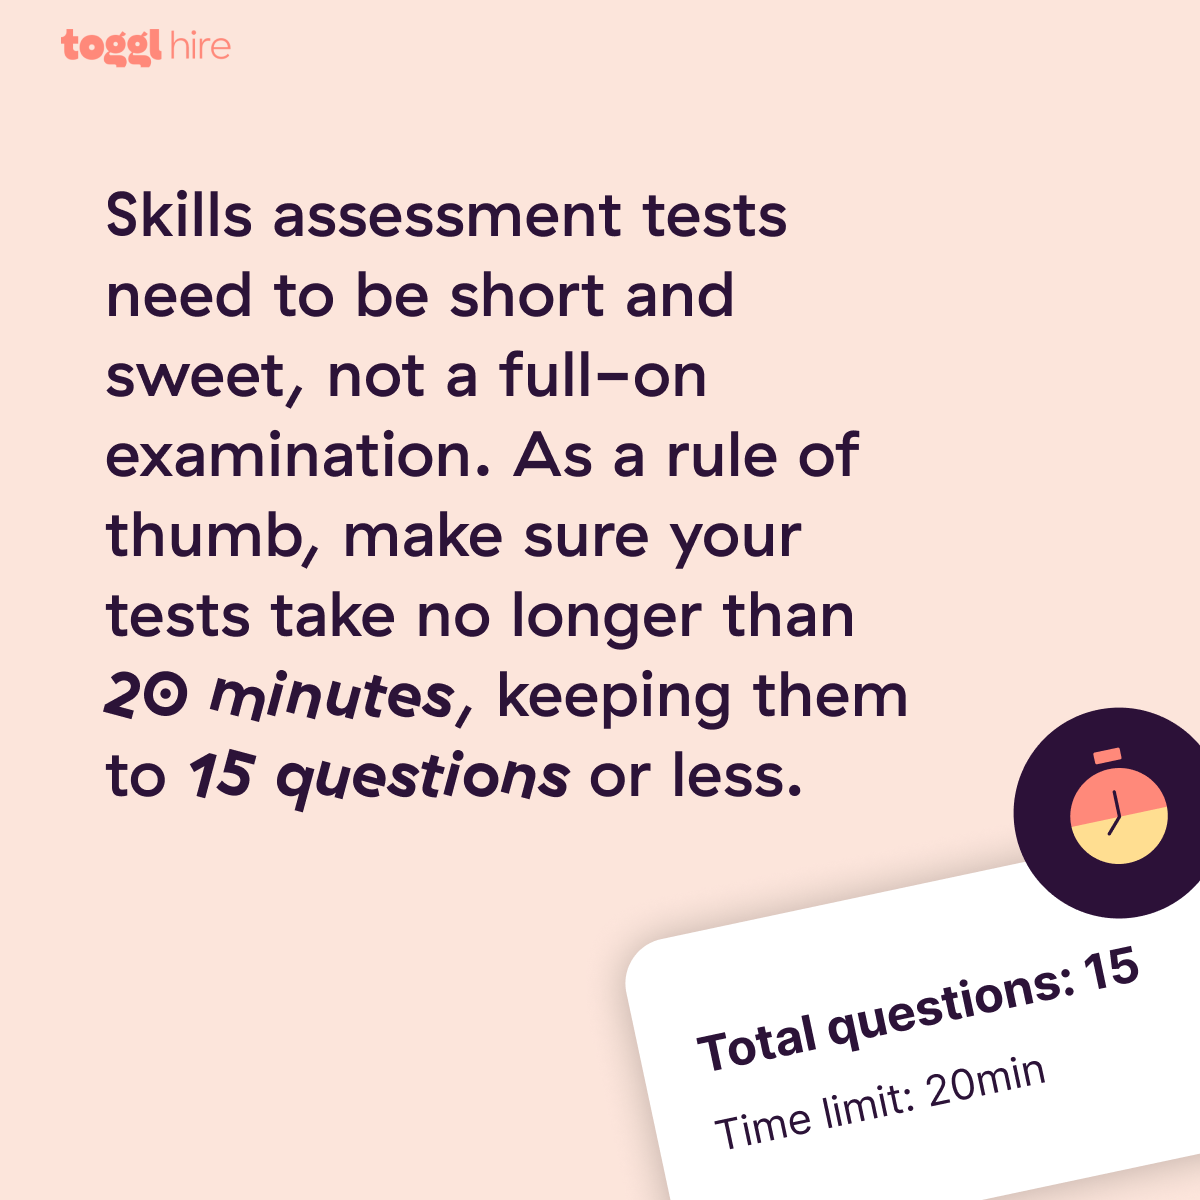 最好的技能测试是简单明了的。我们建议坚持20分钟的评估，15个问题或更少。